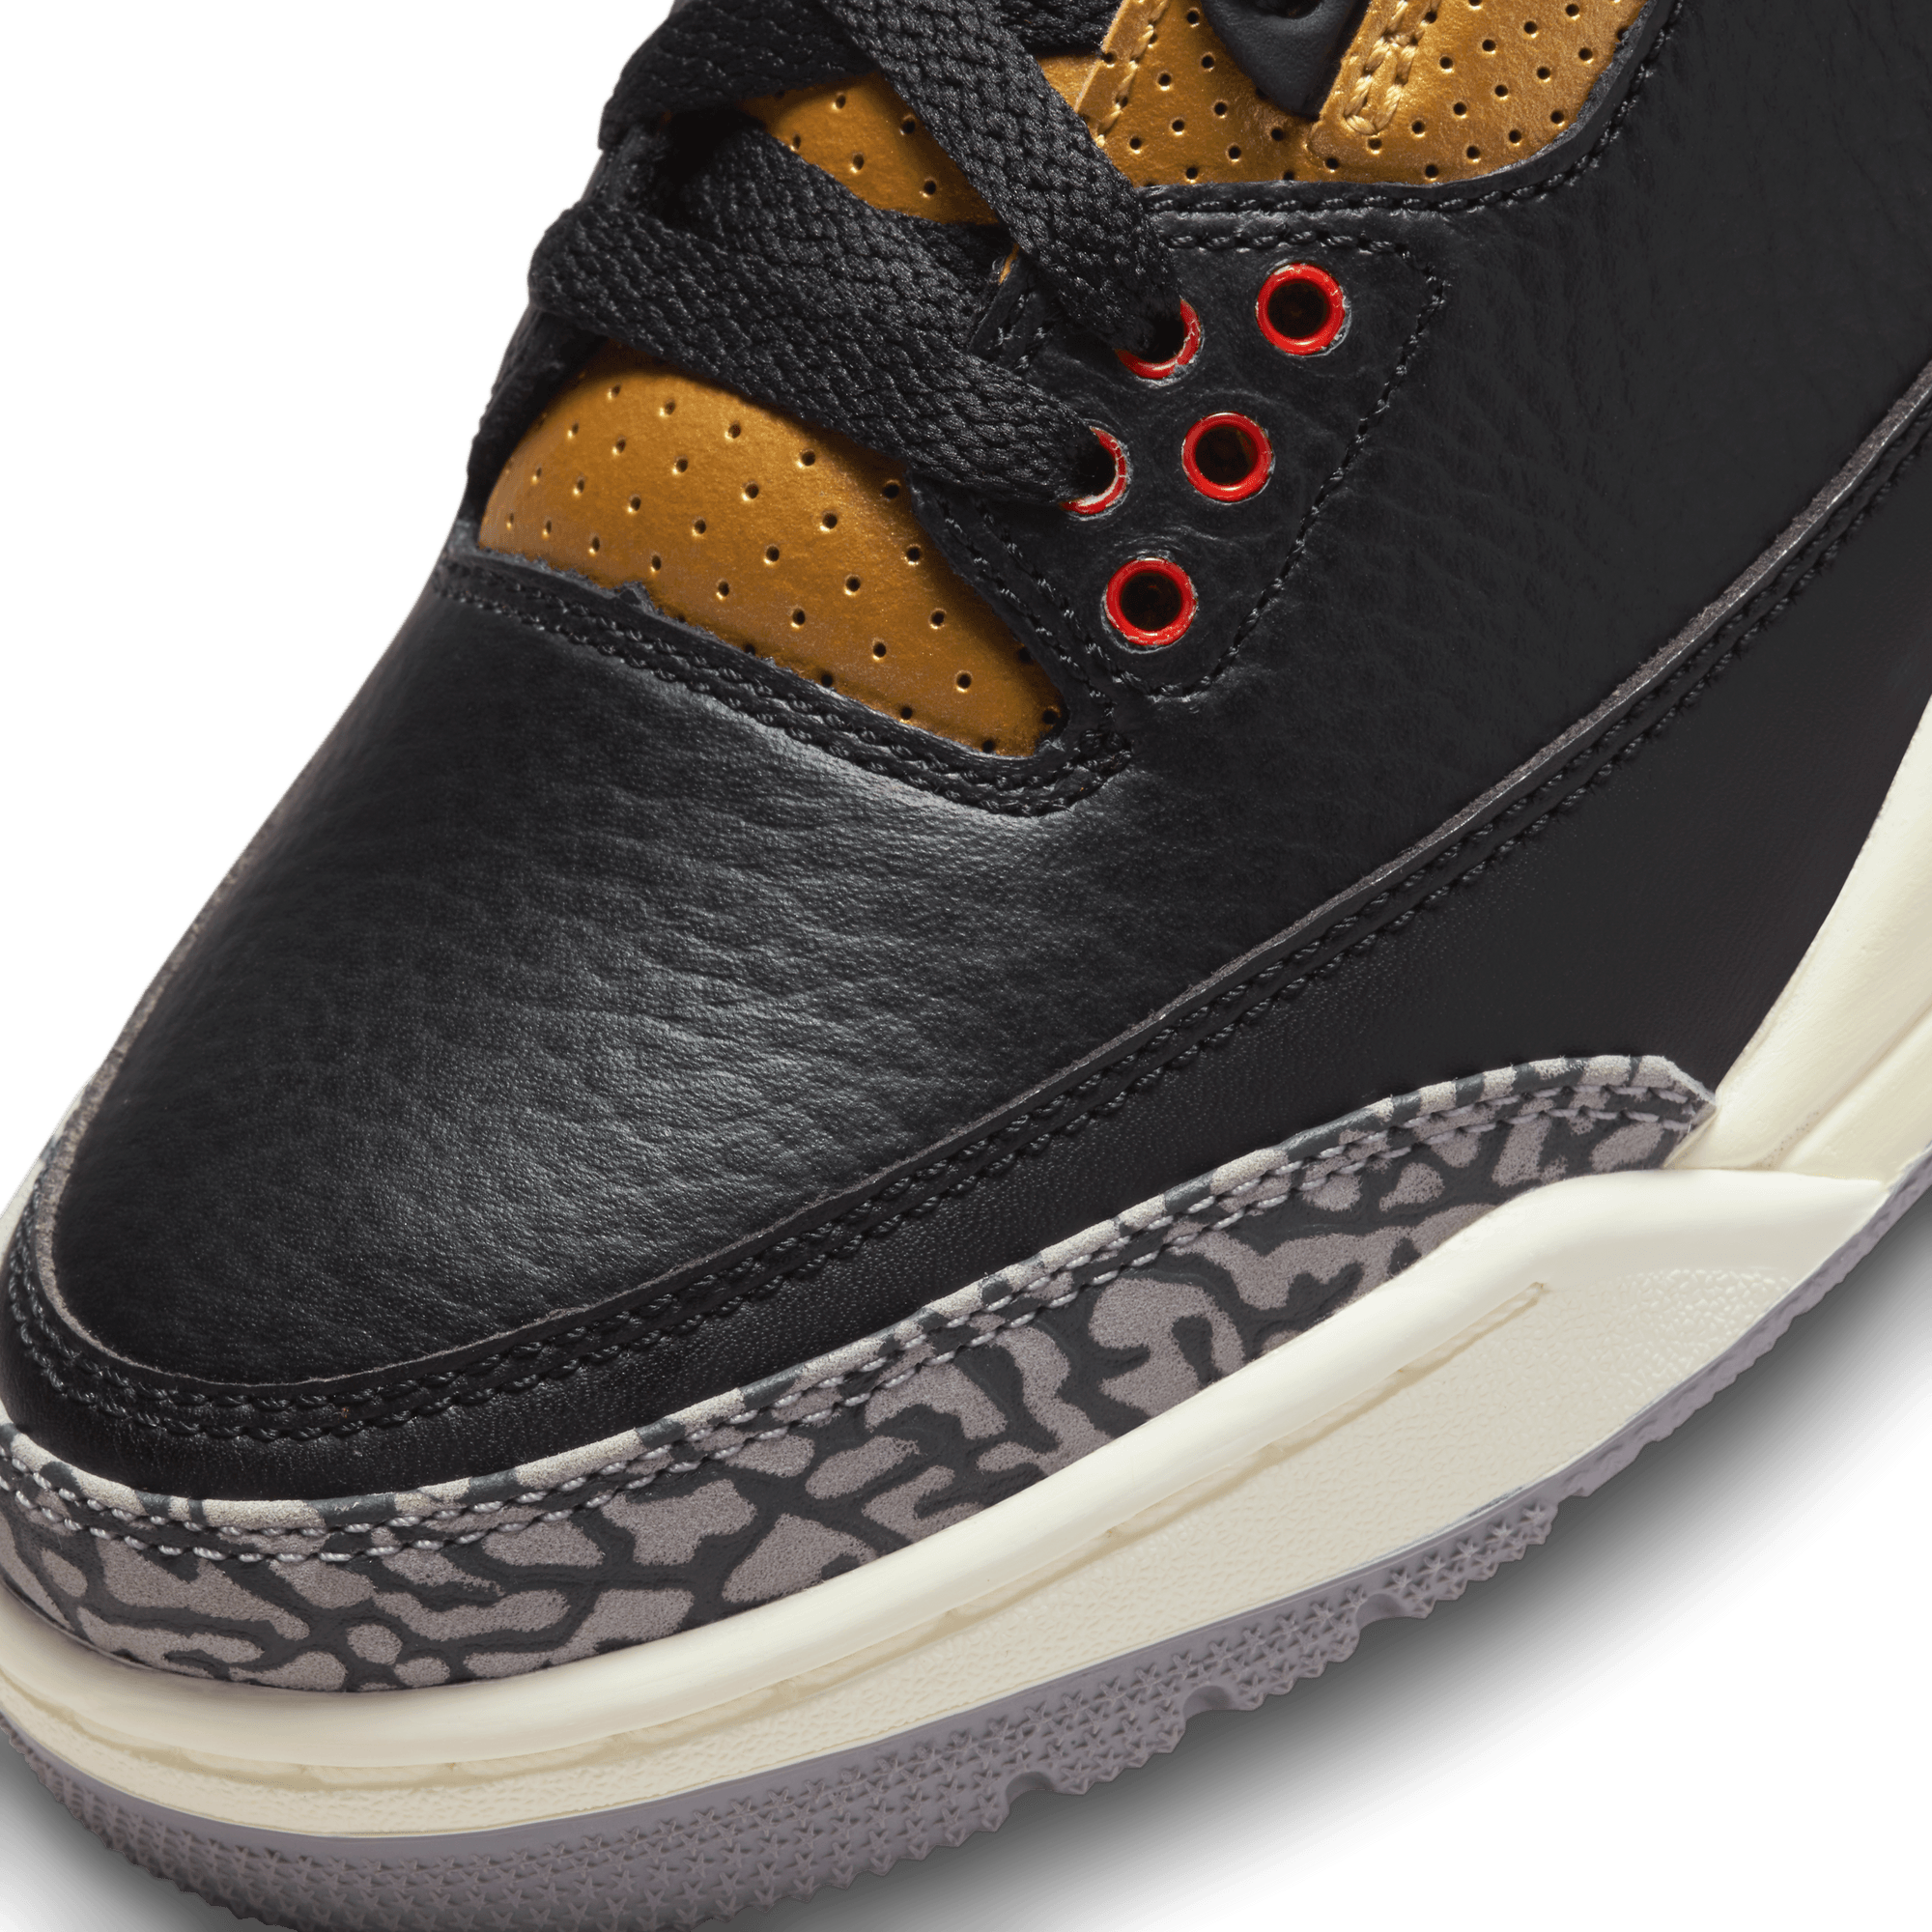 WMNS Nike Air Jordan 3 Retro